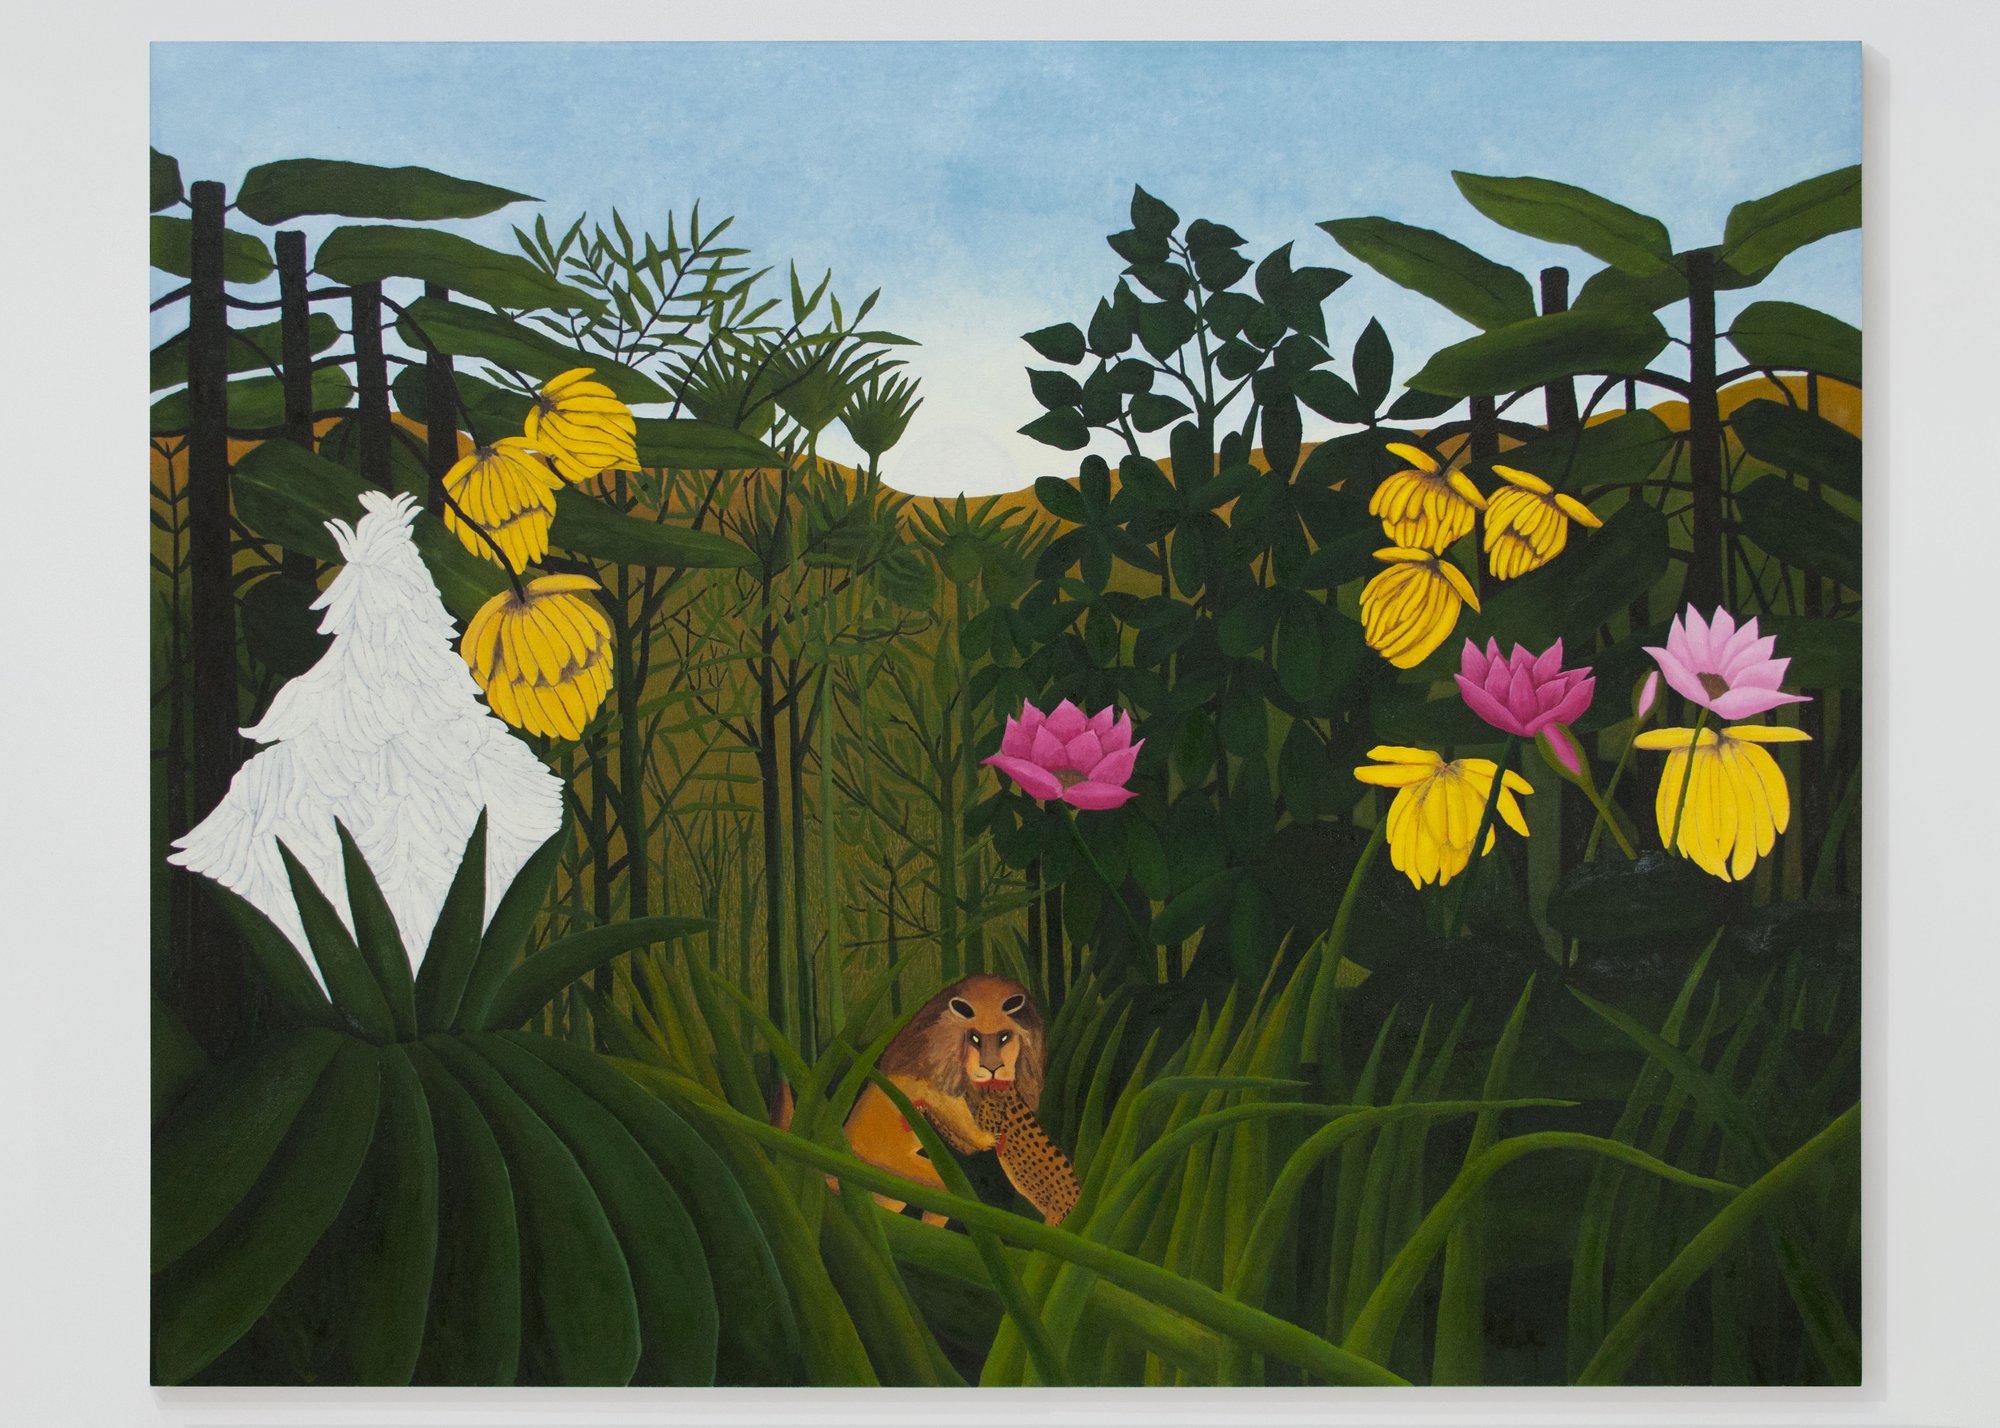 Leidy Churchman, Rousseau, oil on linen, 167.6 x 213.4 cm, 2015